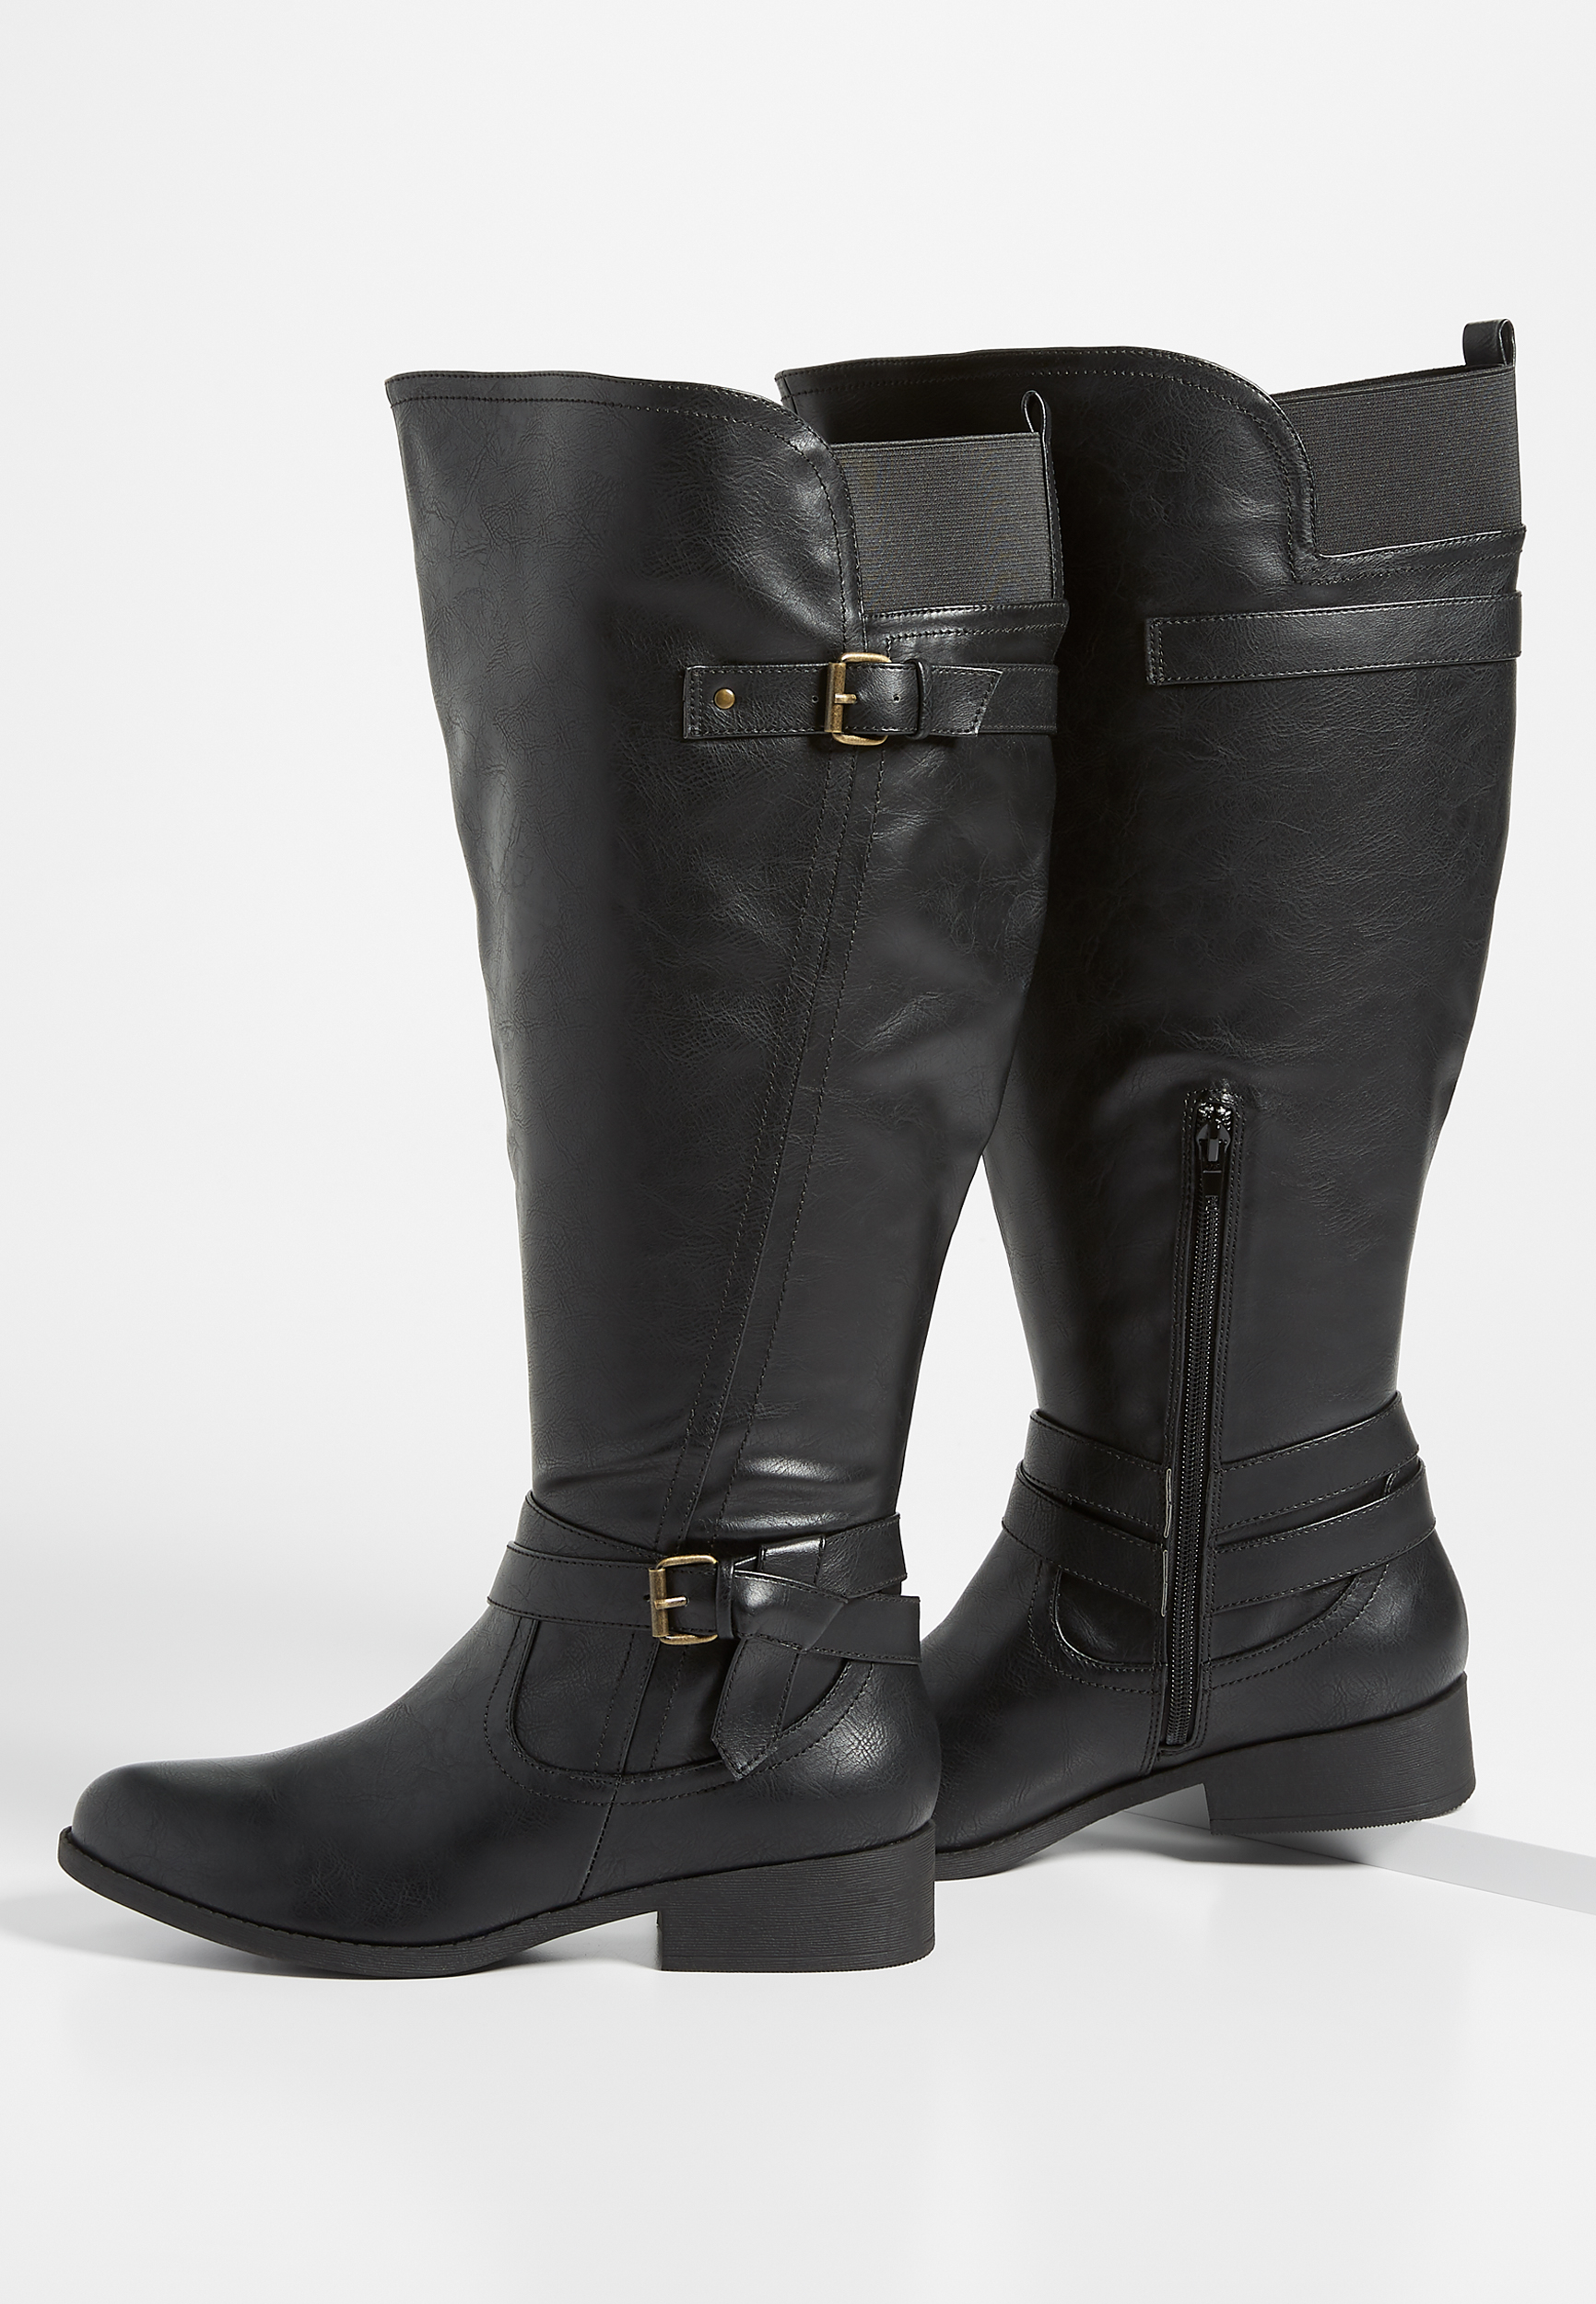 black wide calf boots